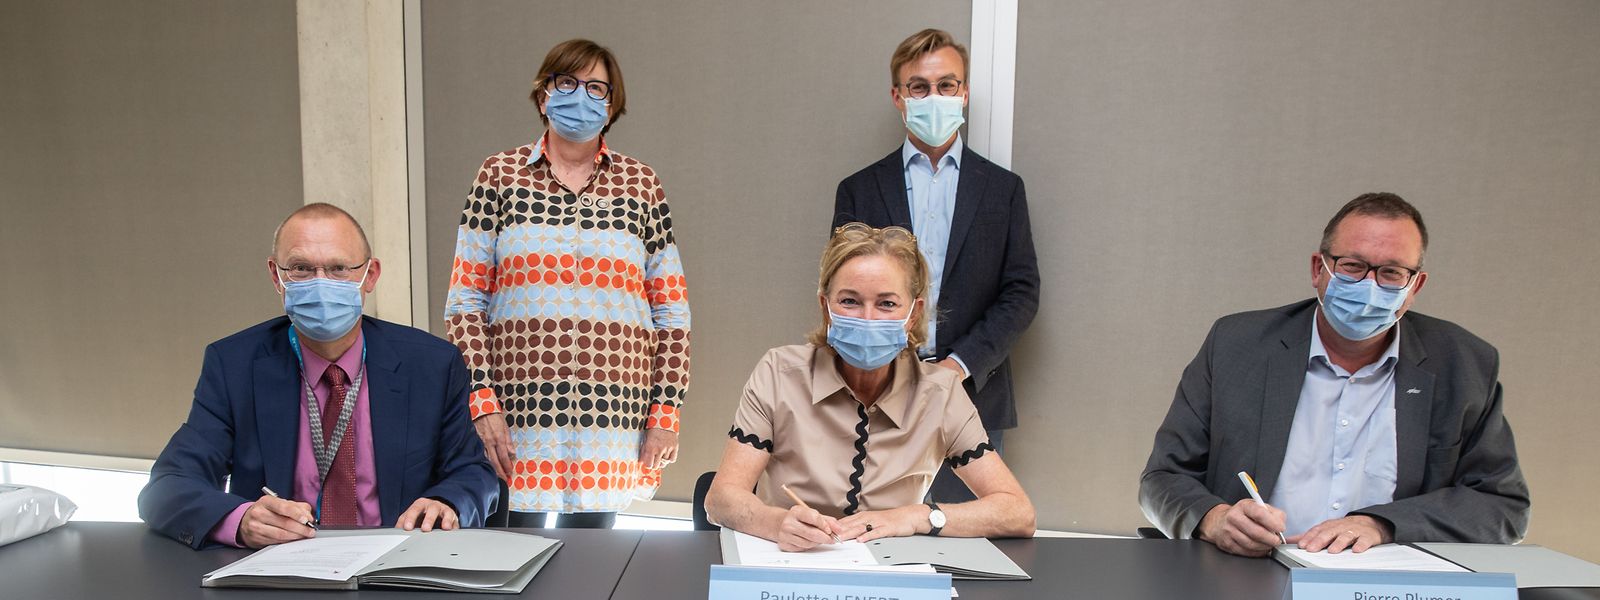 Das CHL, das Rehazenter und das Domaine thermal haben mit dem Gesundheitsministerium eine Konvention für ein Projekt zur Behandlung von Long-Covid-Patienten unterzeichnet. V.l.n.r. Dr Gaston Schütz, Monique Birkel, Paulette Lenert, Laurent Mertz und Pierre Plumer.